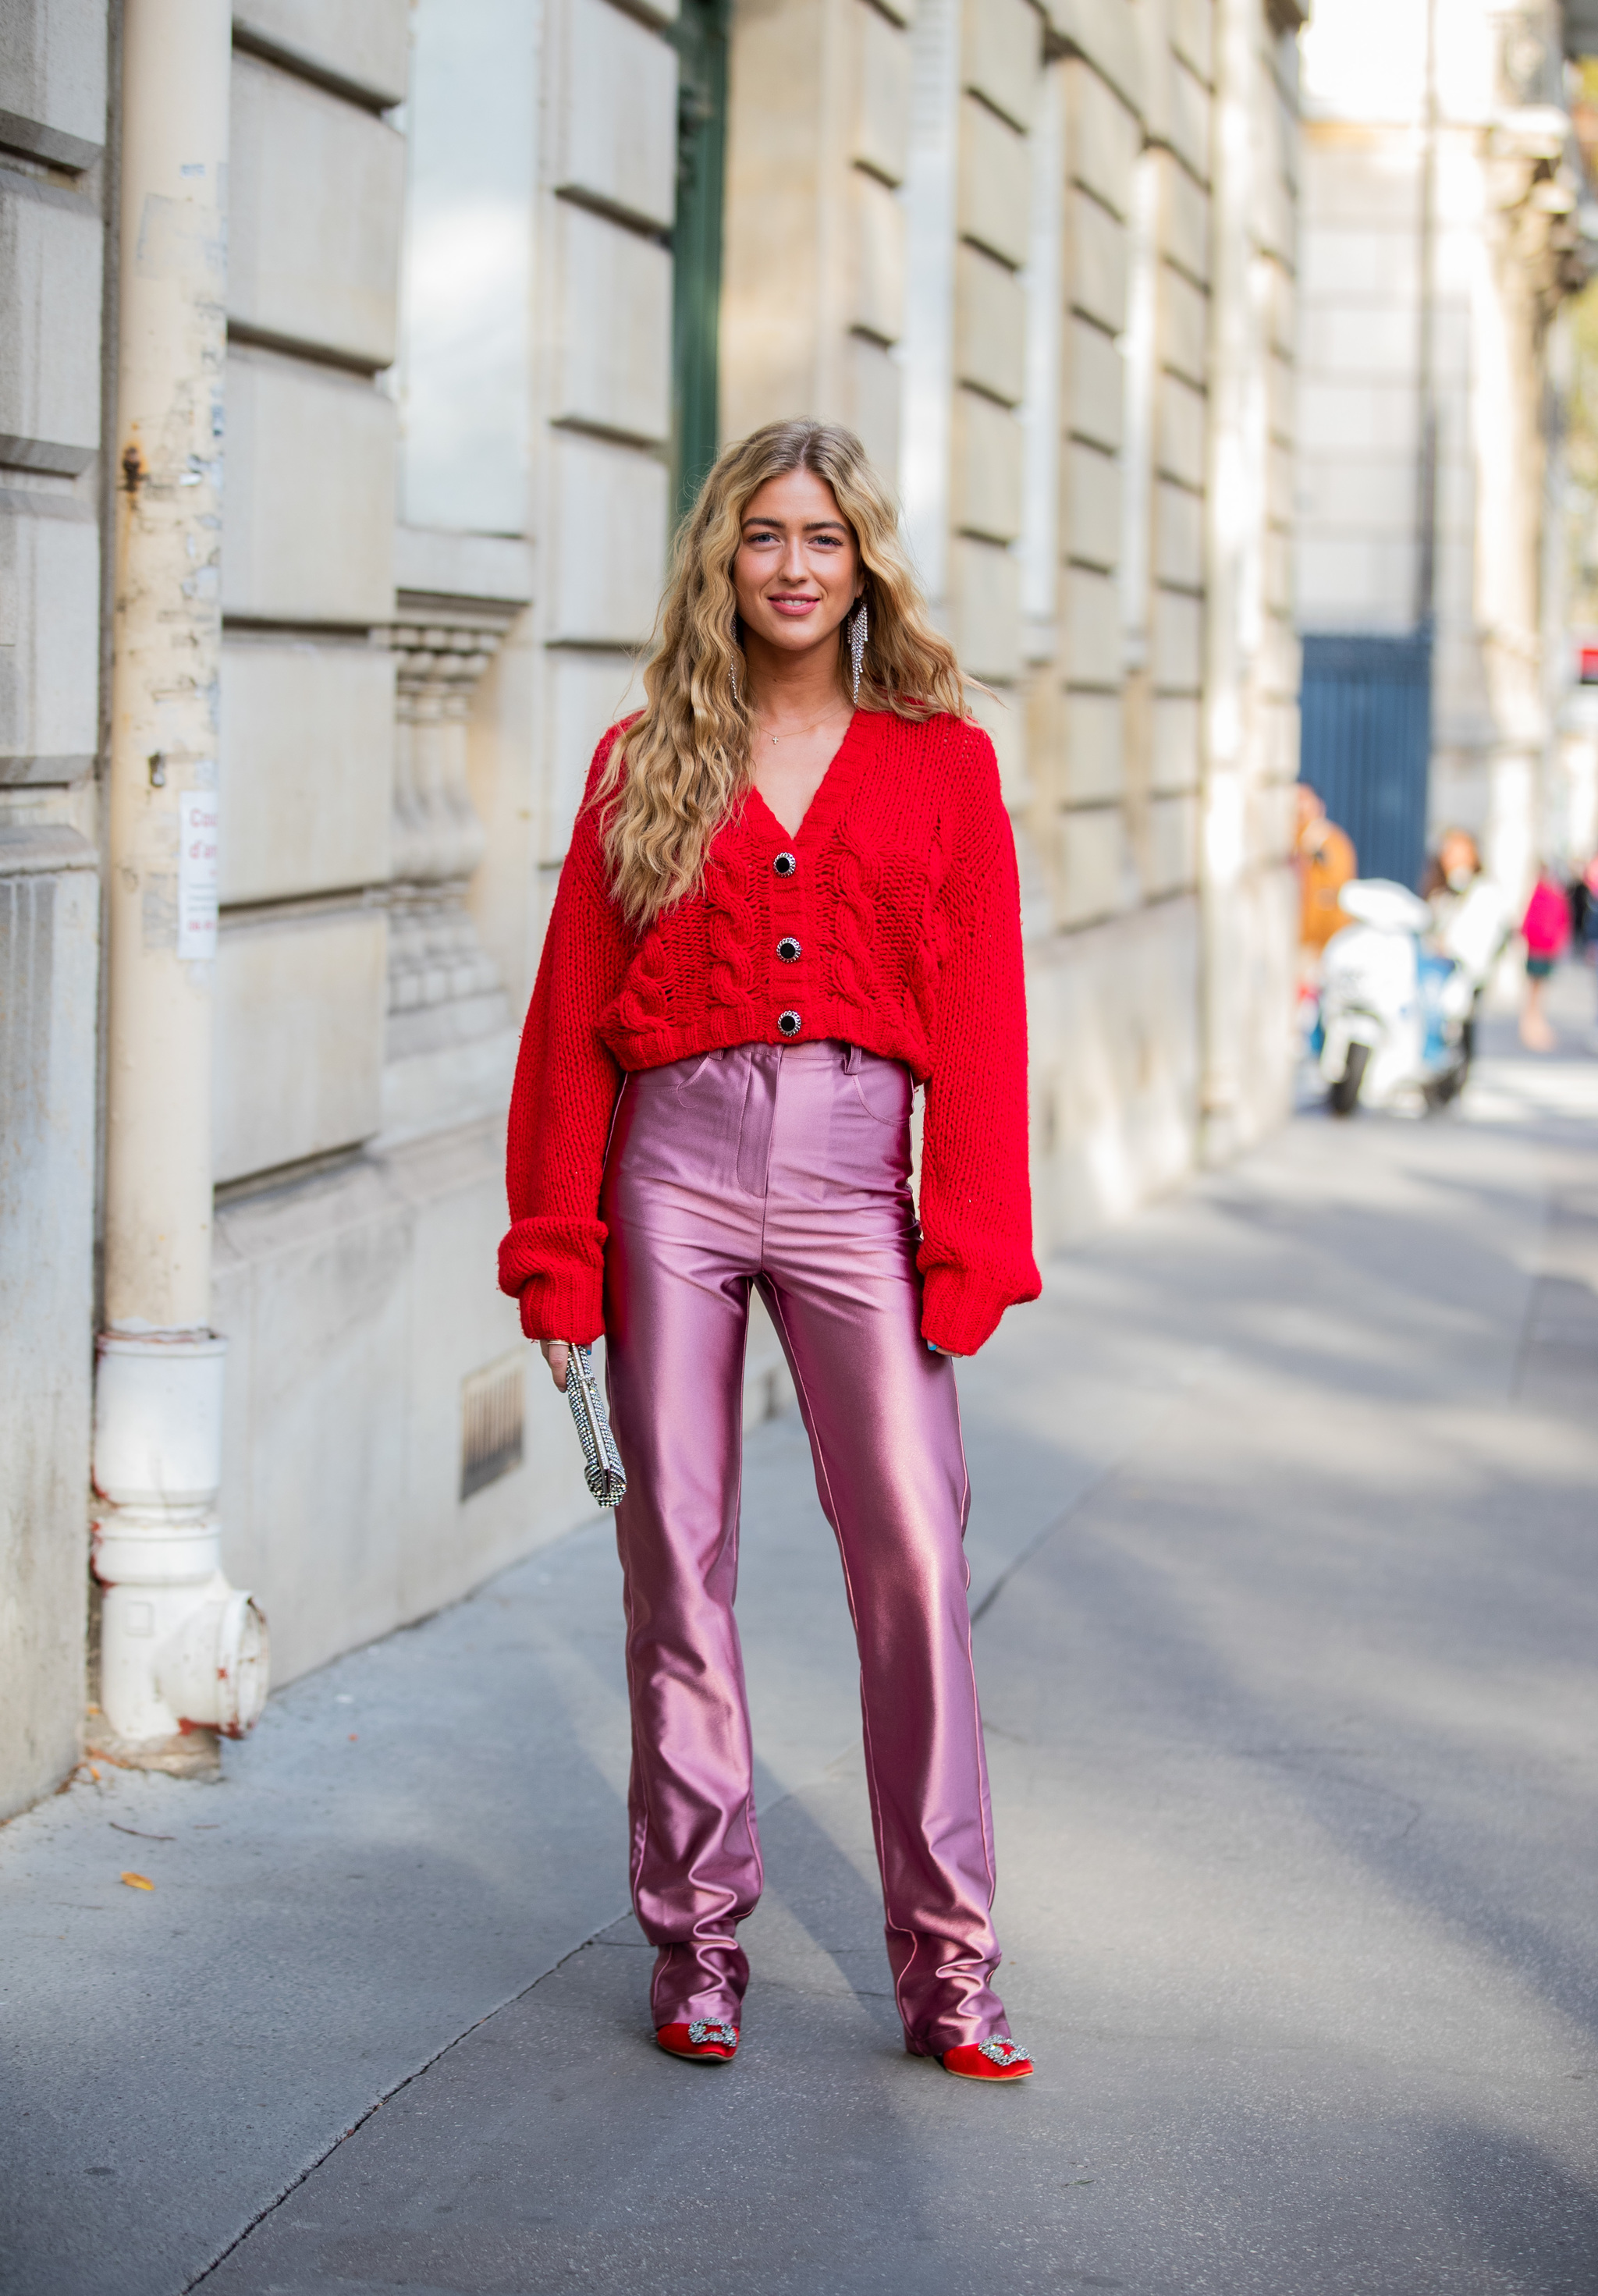 Emili Sindlev con un look que combina rojo y rosa.